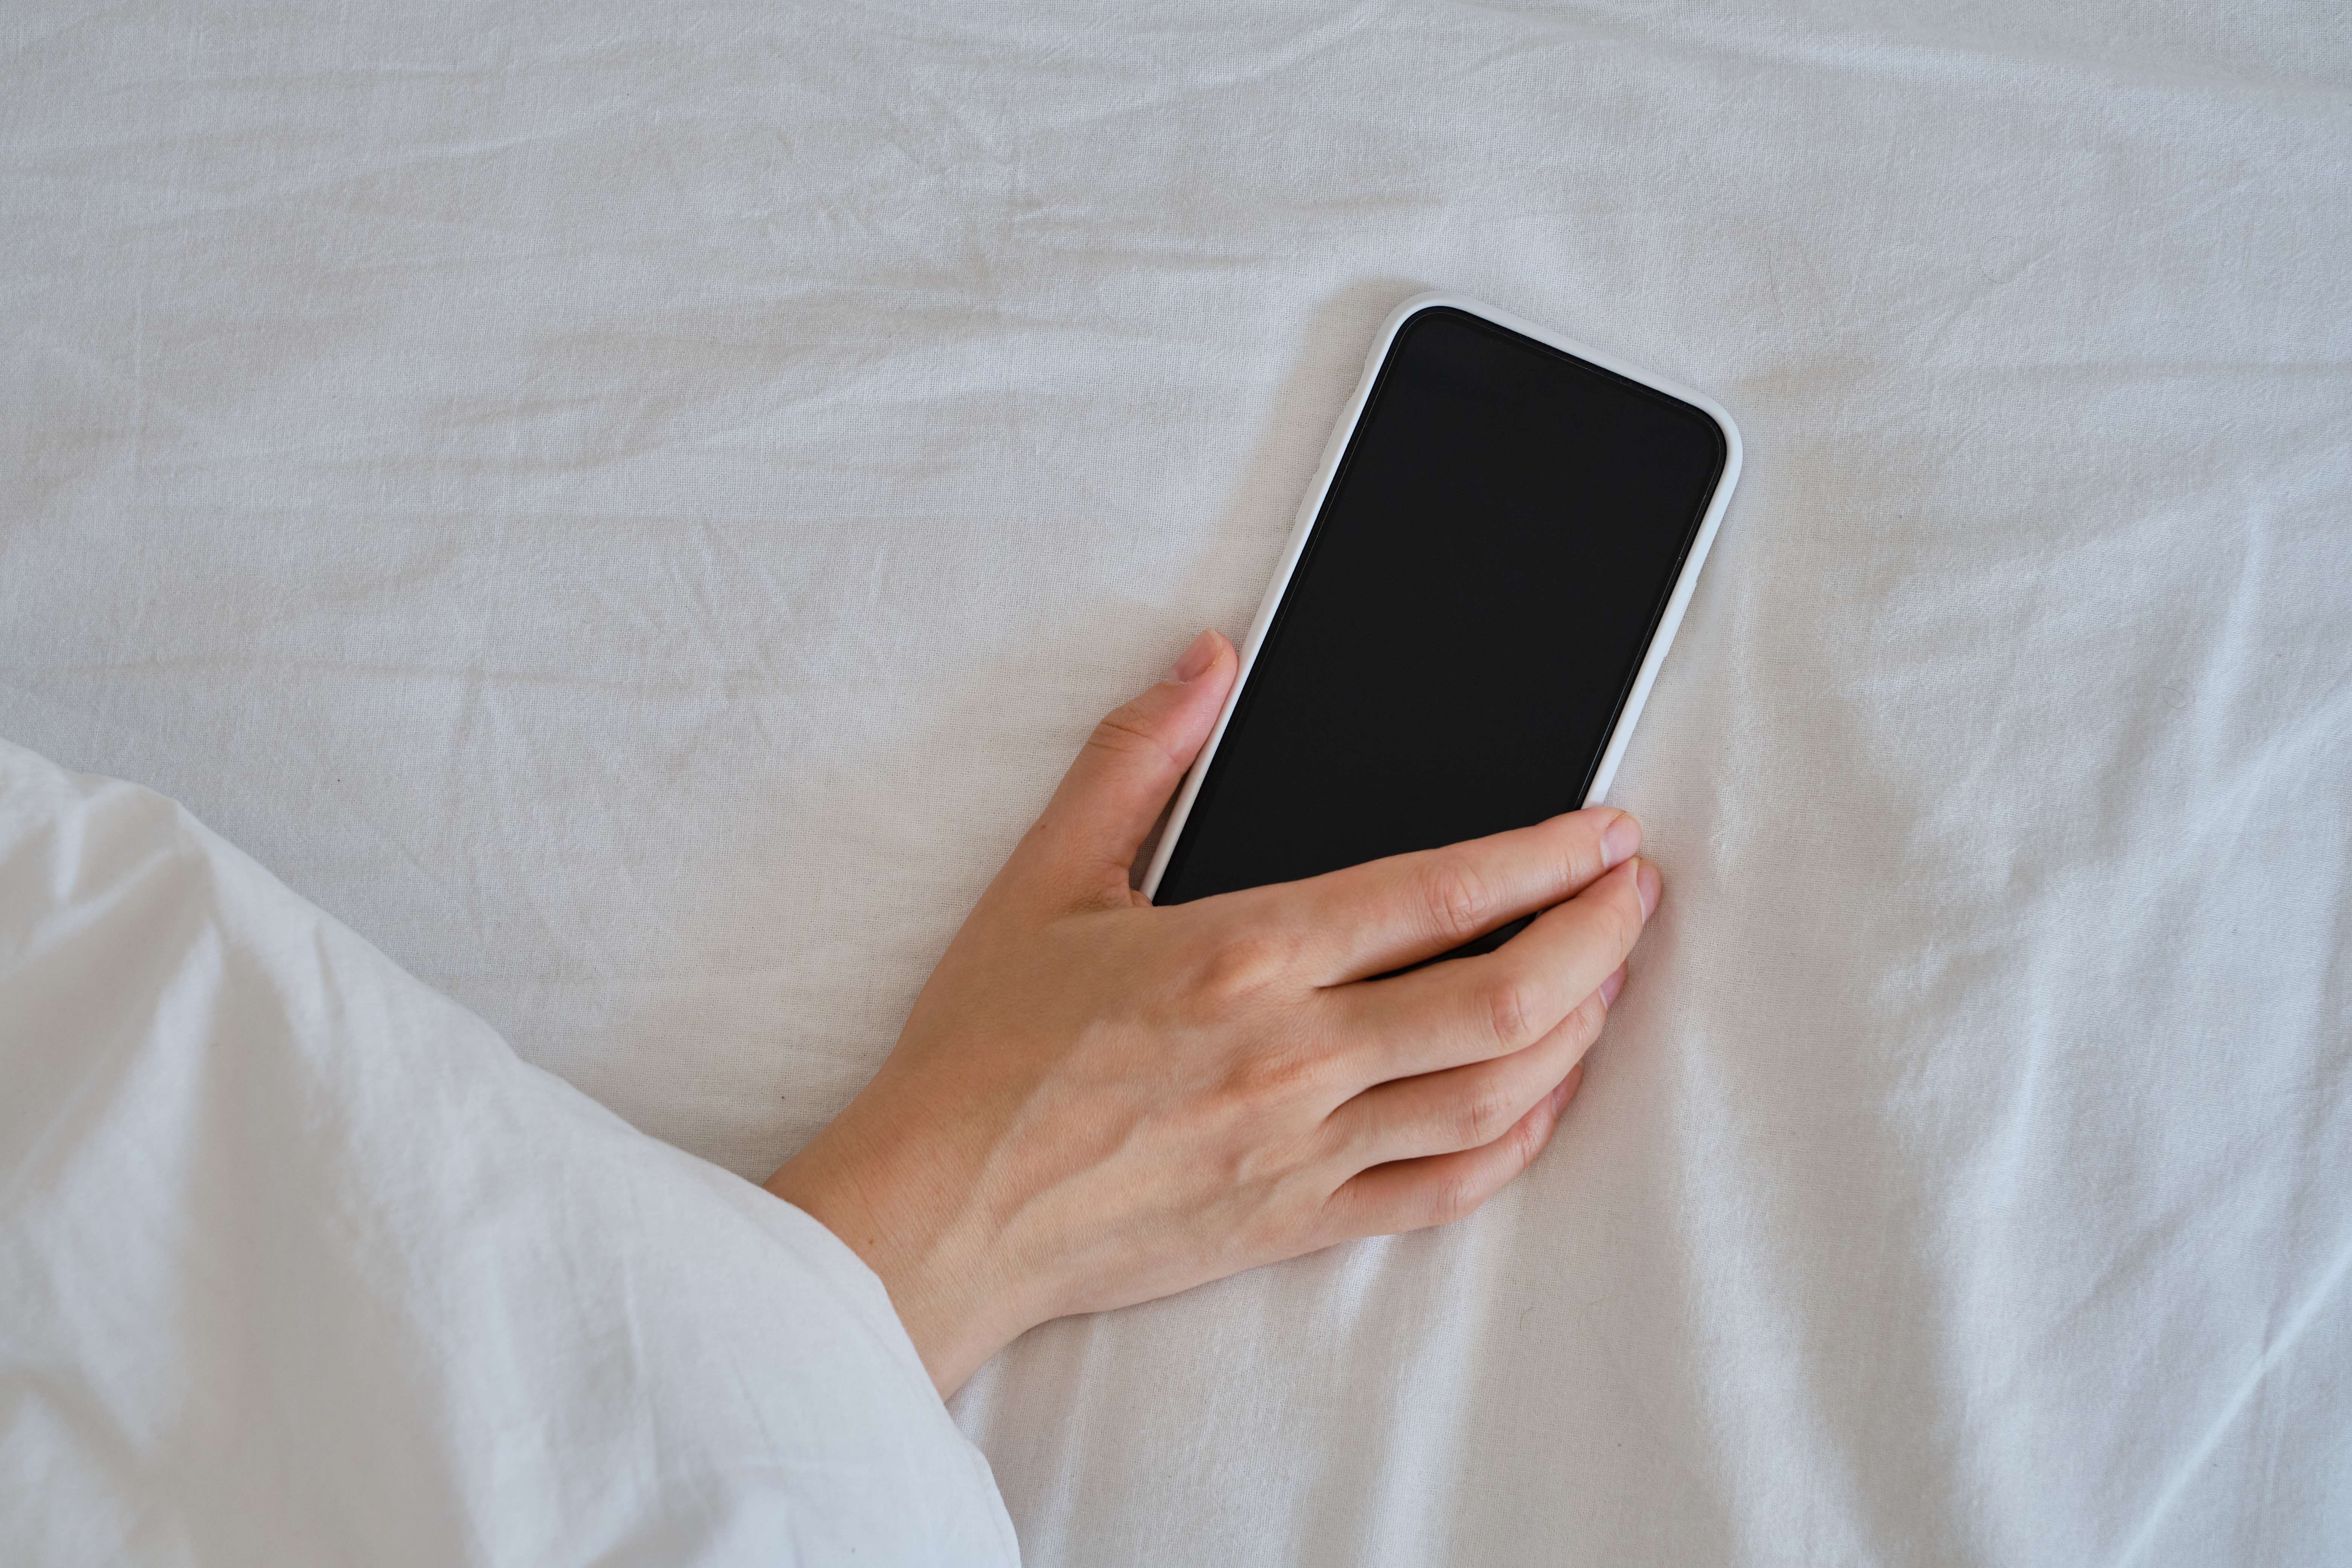 Nahaufnahme einer Hand, die ein Smartphone im Bett hält | Quelle: Shutterstock